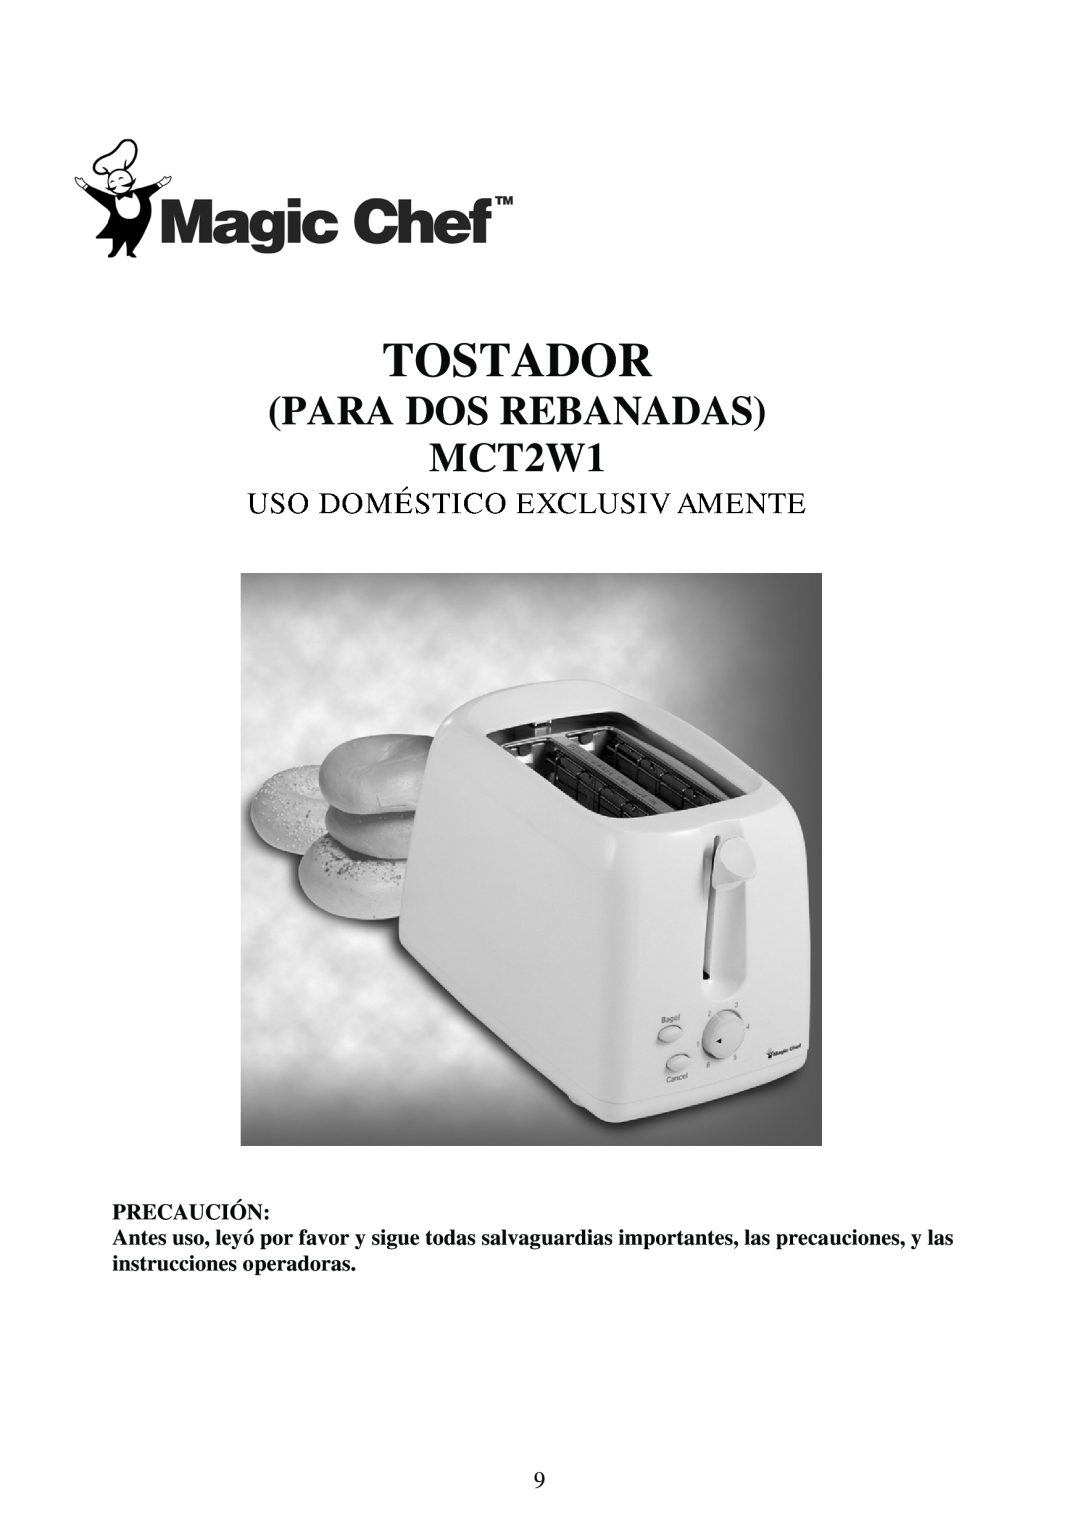 Magic Chef operating instructions PARA DOS REBANADAS MCT2W1, Tostador, Precaución 